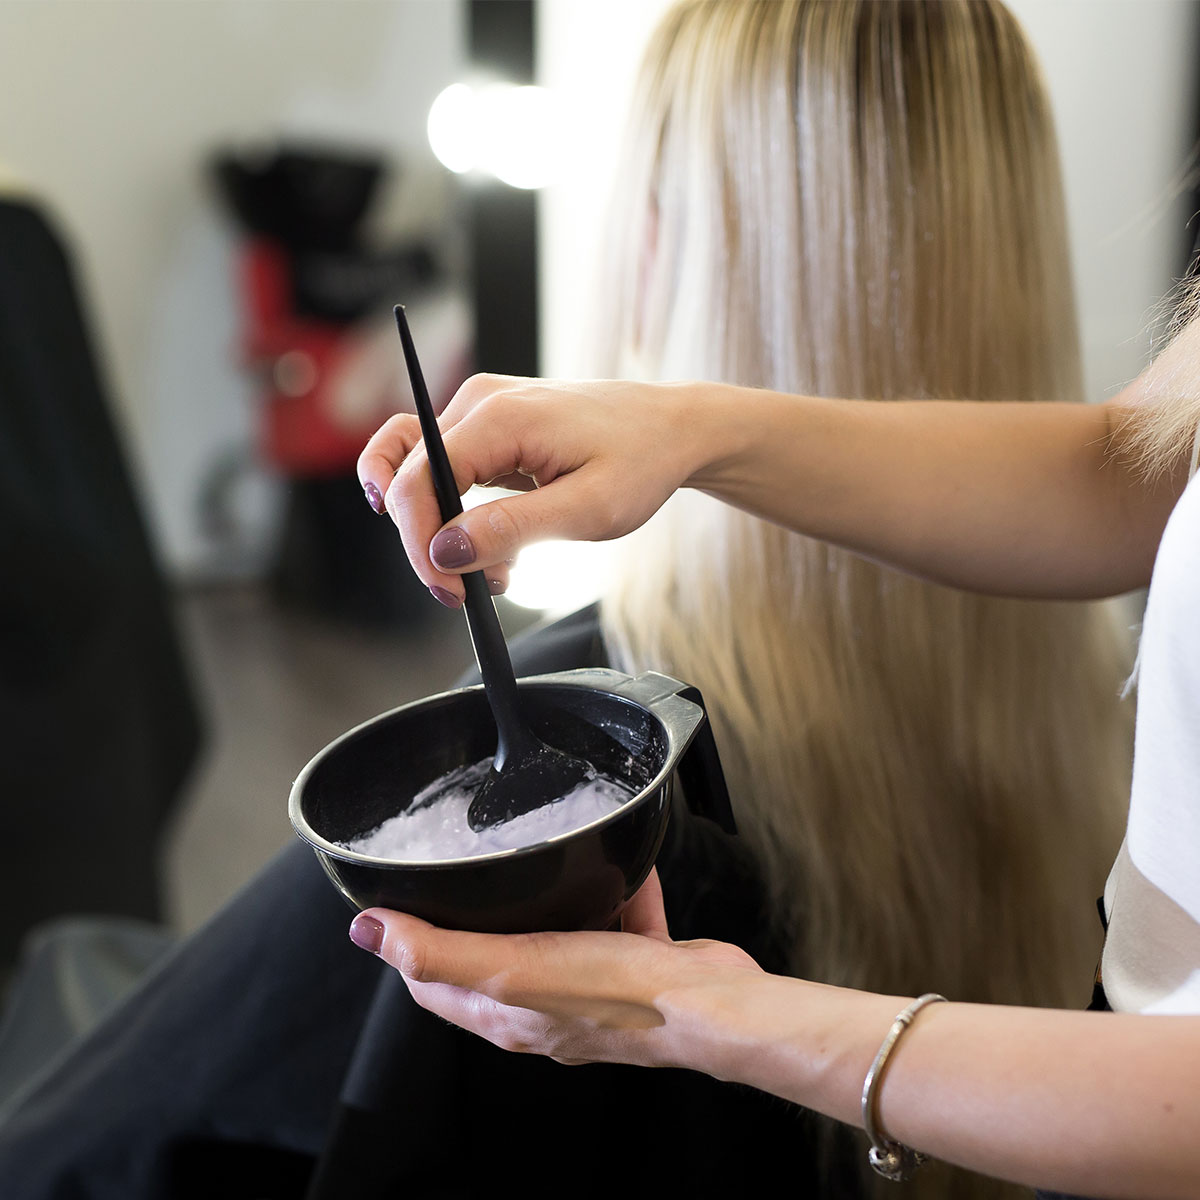 hair stylist mixing hair dye black bowl salon blonde hair client